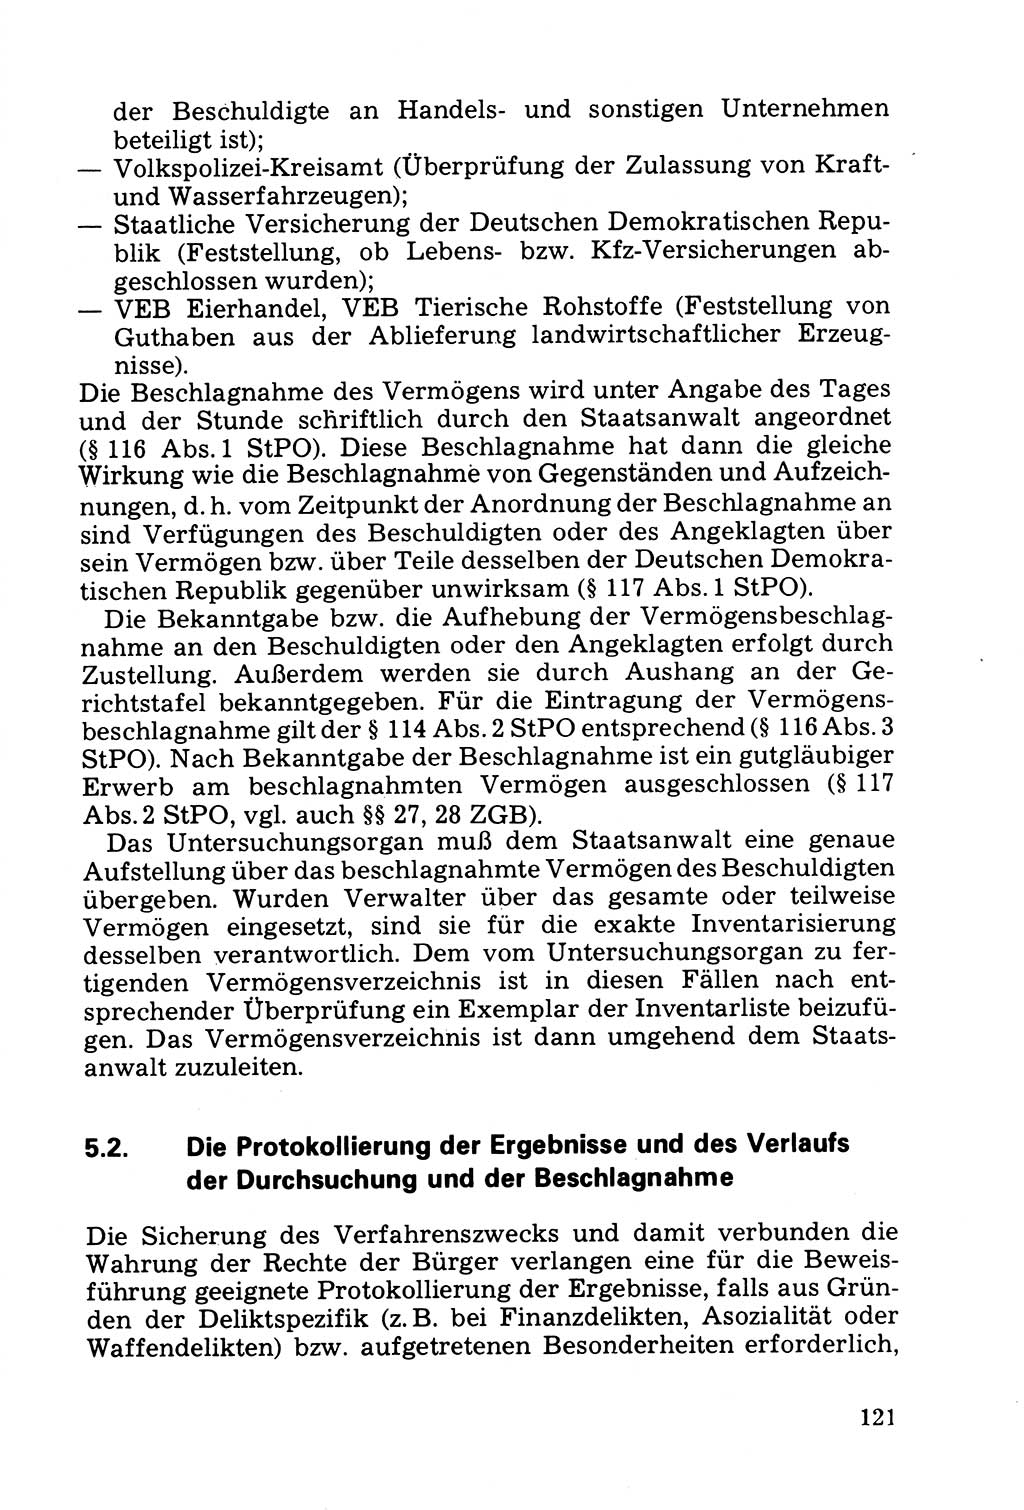 Die Durchsuchung und die Beschlagnahme [Deutsche Demokratische Republik (DDR)] 1979, Seite 121 (Durchs. Beschl. DDR 1979, S. 121)